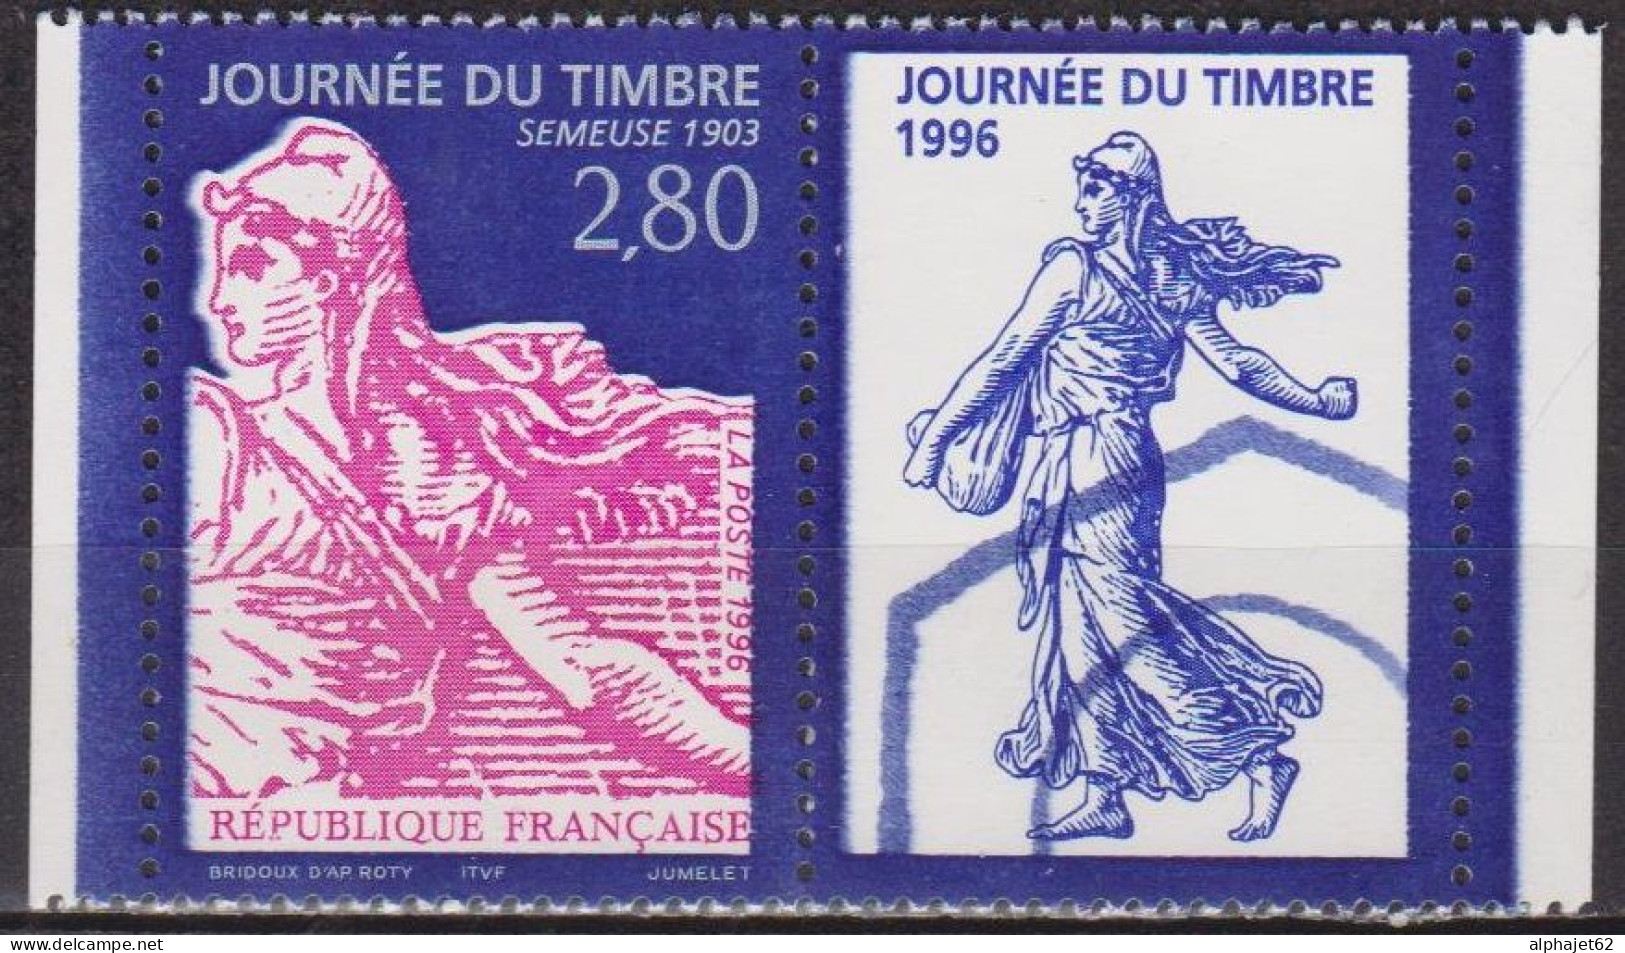 Journée Du Timbre, Type Semeuse 1903 - FRANCE - N° 2991 A ** - 1996 - Ongebruikt